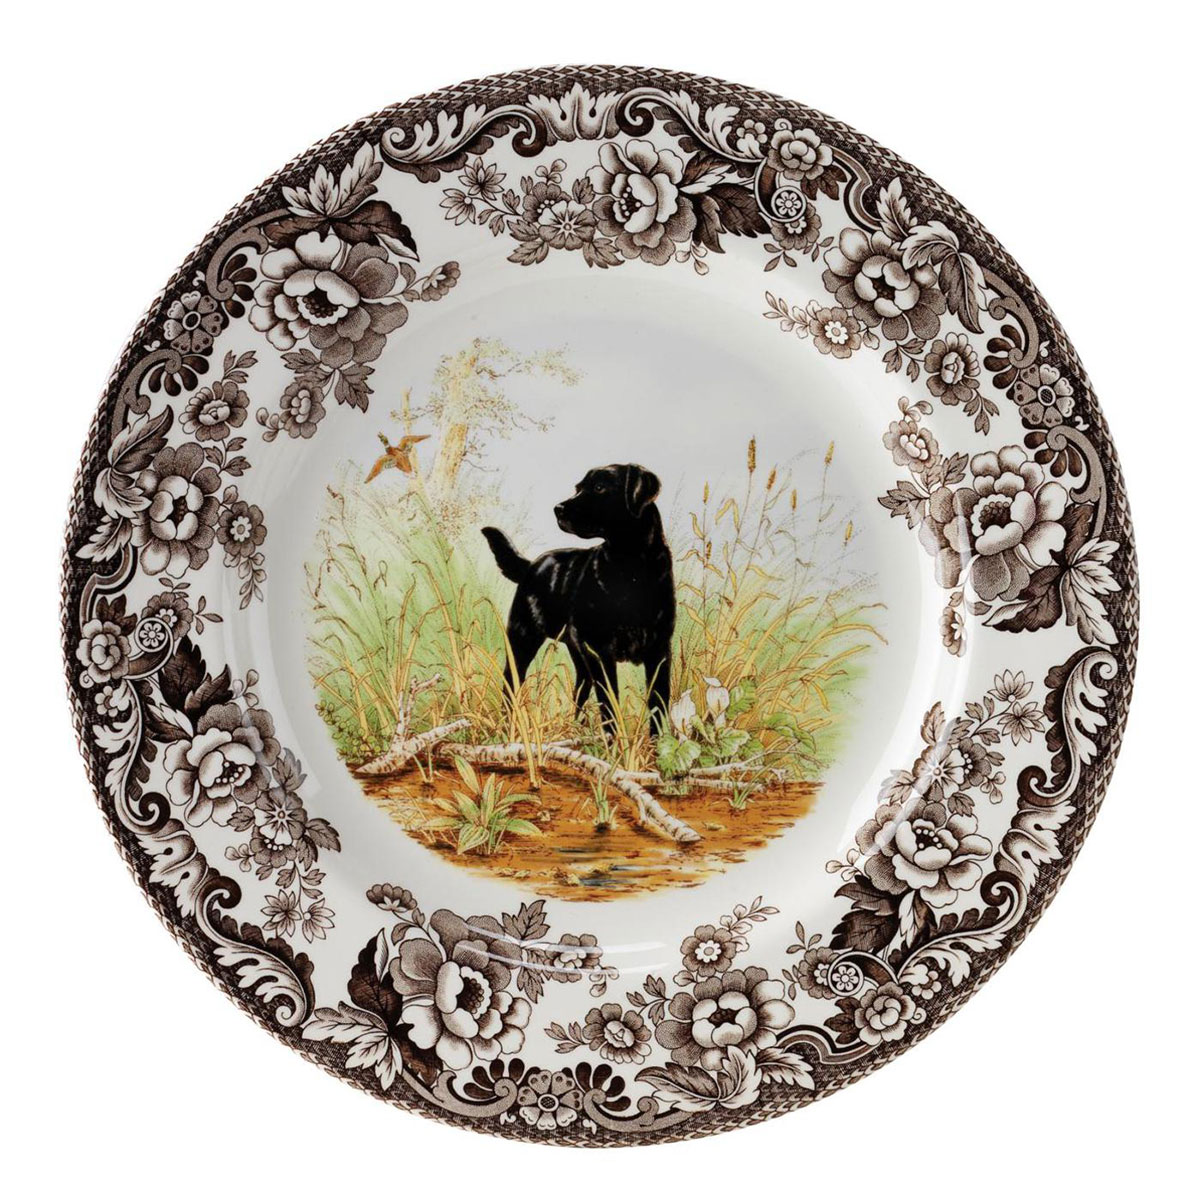 Spode Woodland Hunting Dogs Salad Plate, Black Labrador Retriever